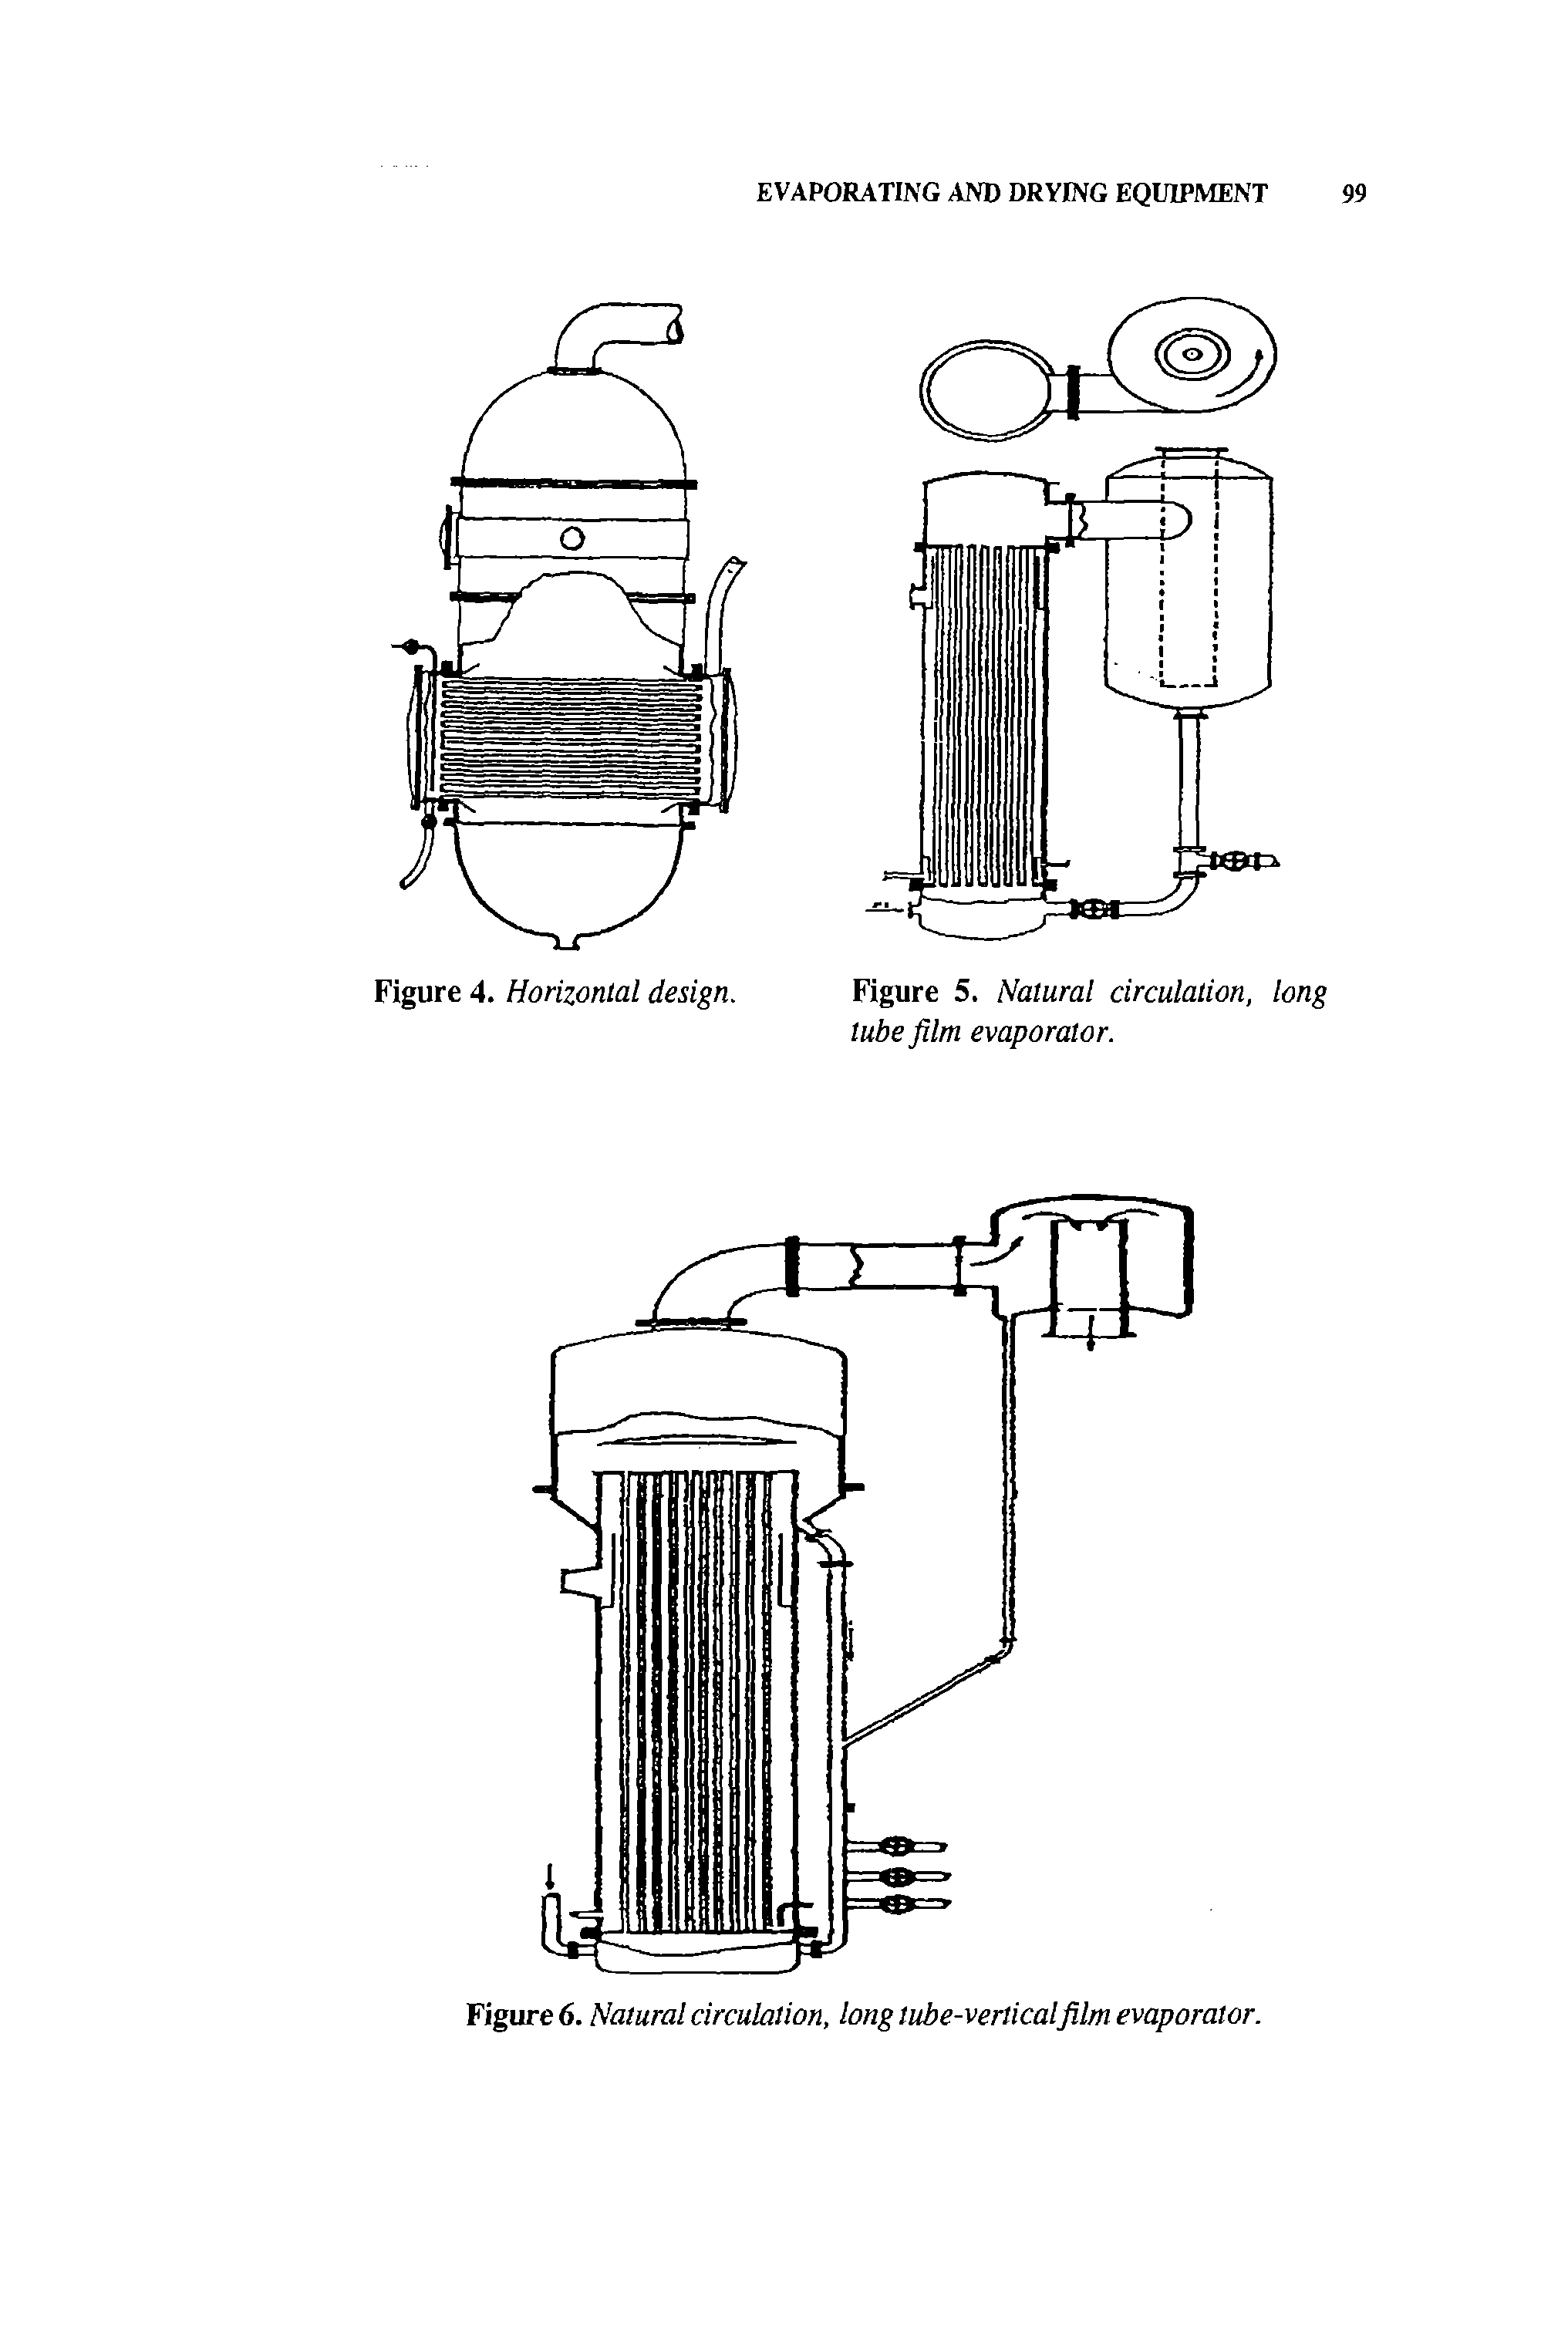 Figure 5. Natural circulation, long tube film evaporator.